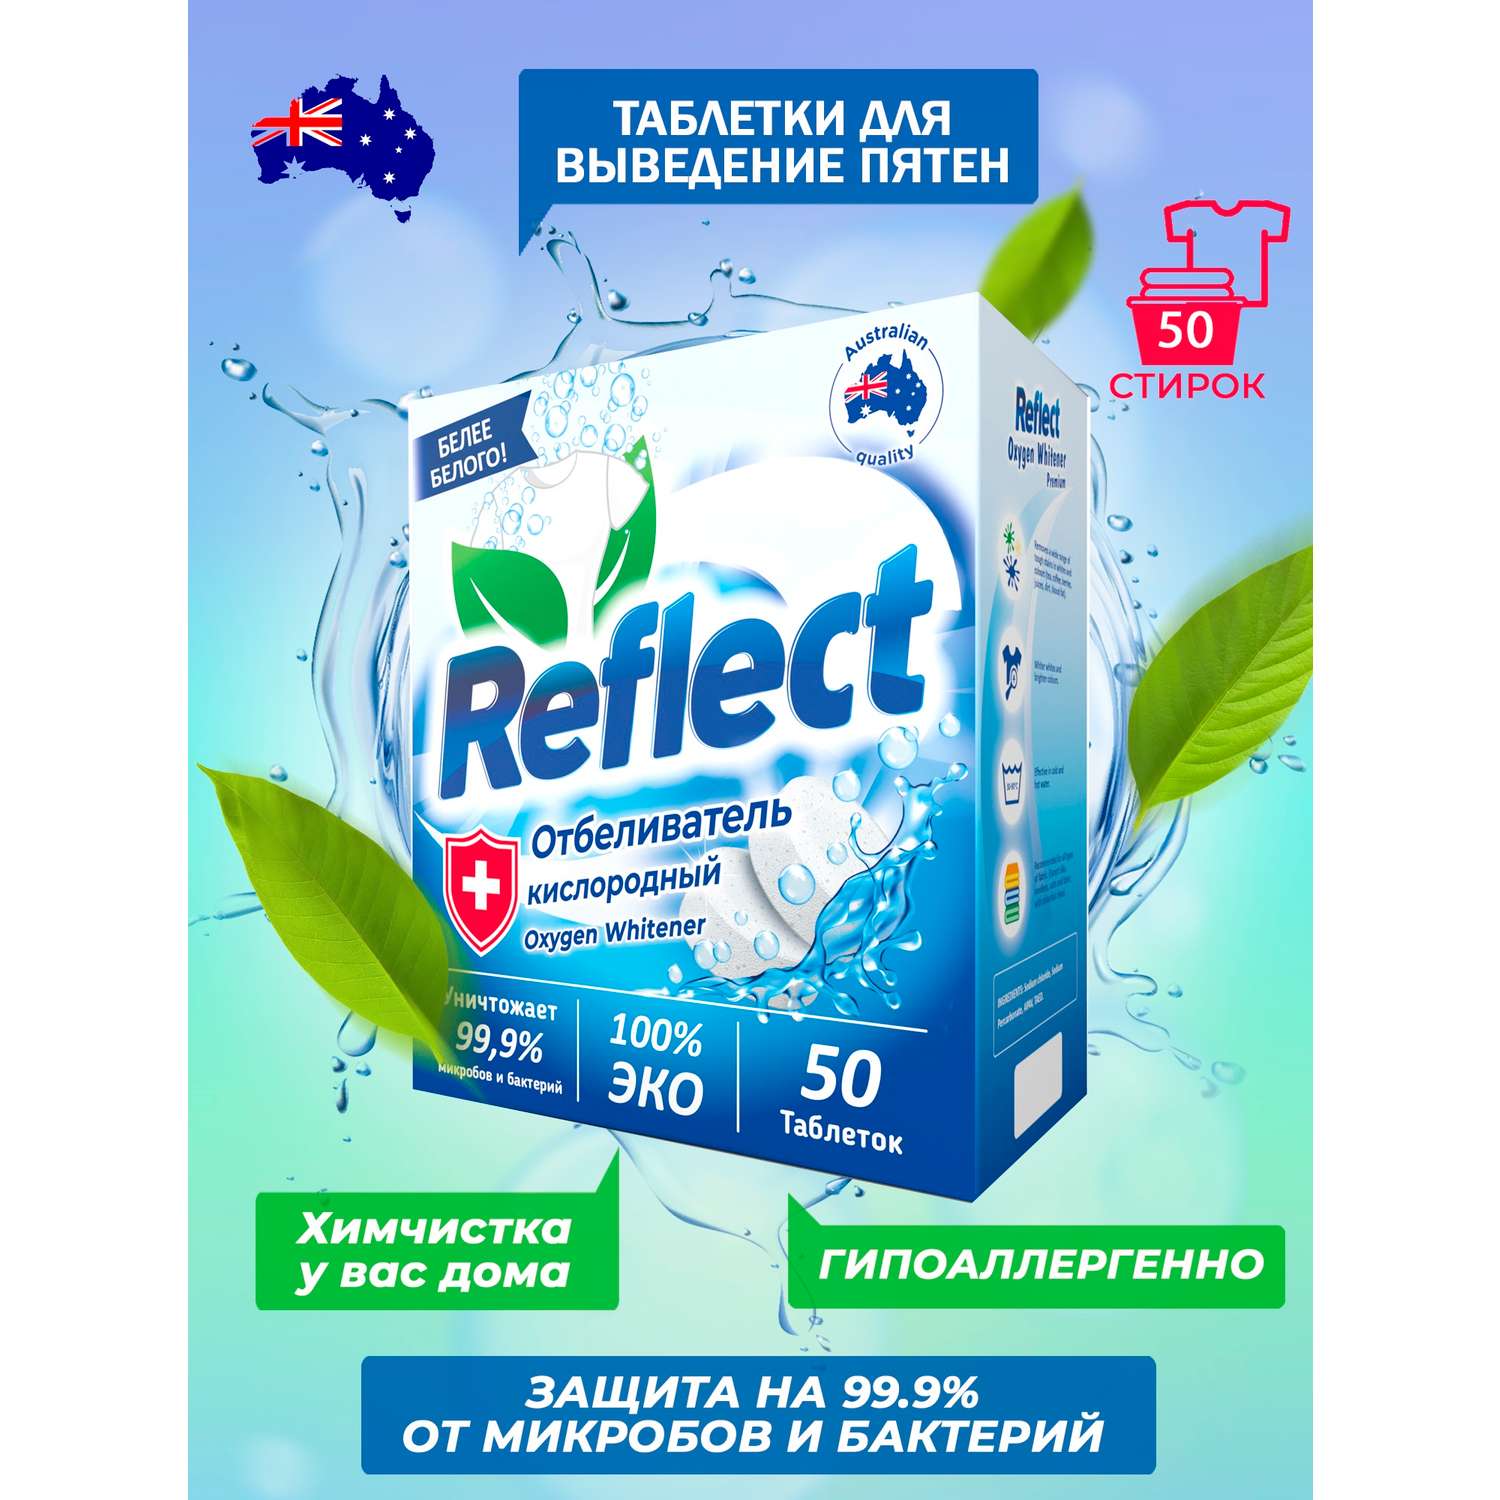 Отбеливатель Oxygen Whitener Reflect Premium для стирки светлого и белого белья экологичный кислородный без хлора 50 таблеток - фото 3